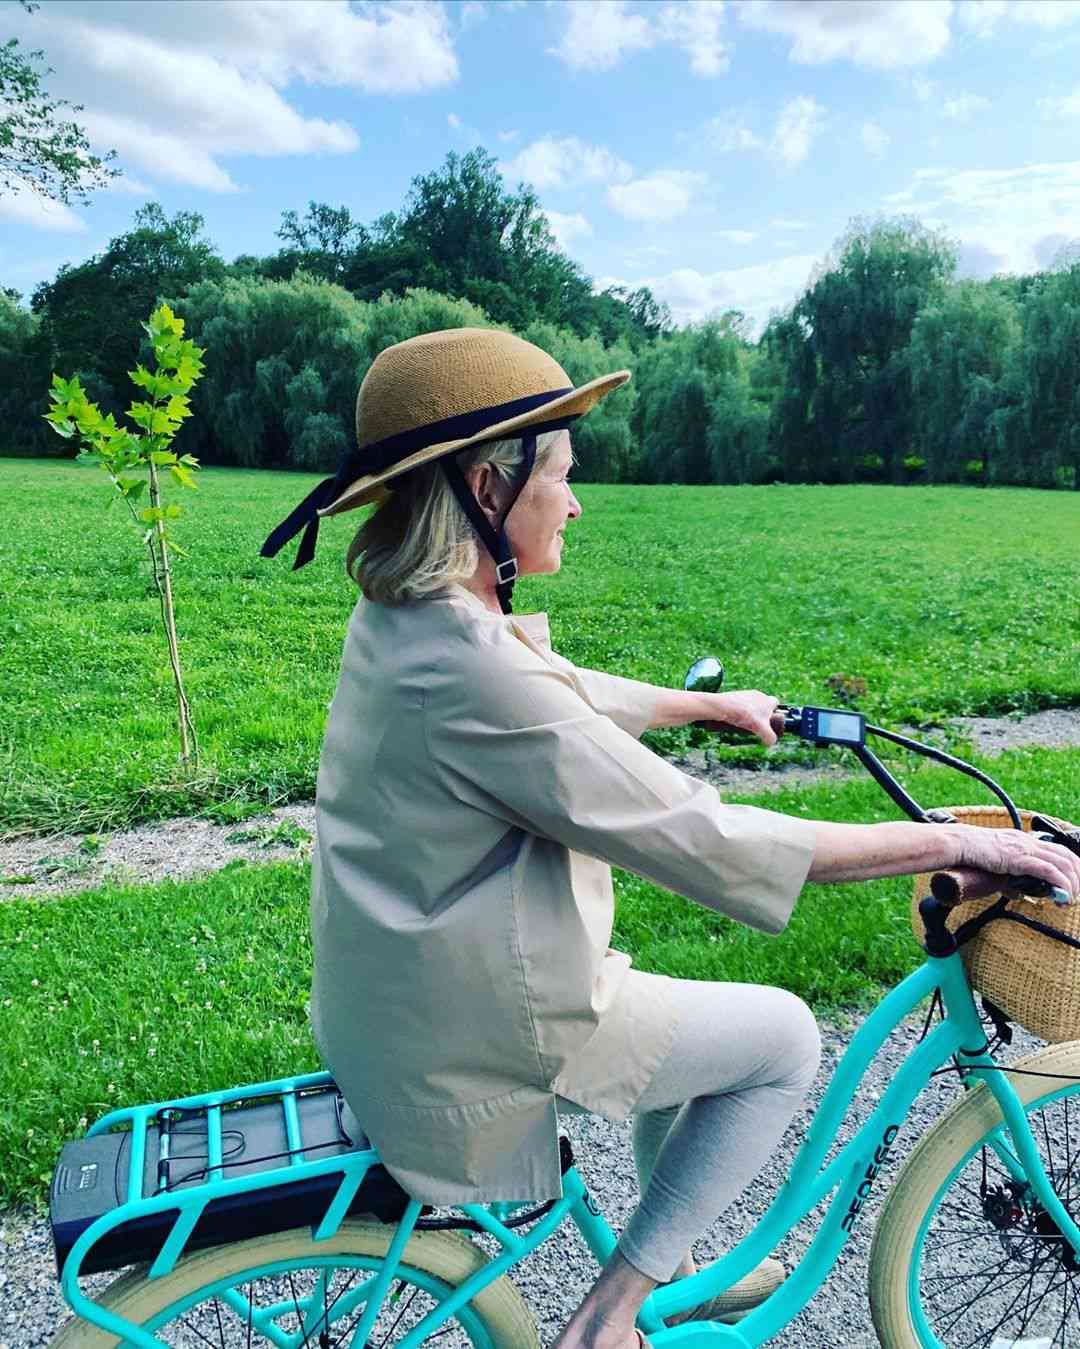 martha stewart bike riding with straw hat helmet